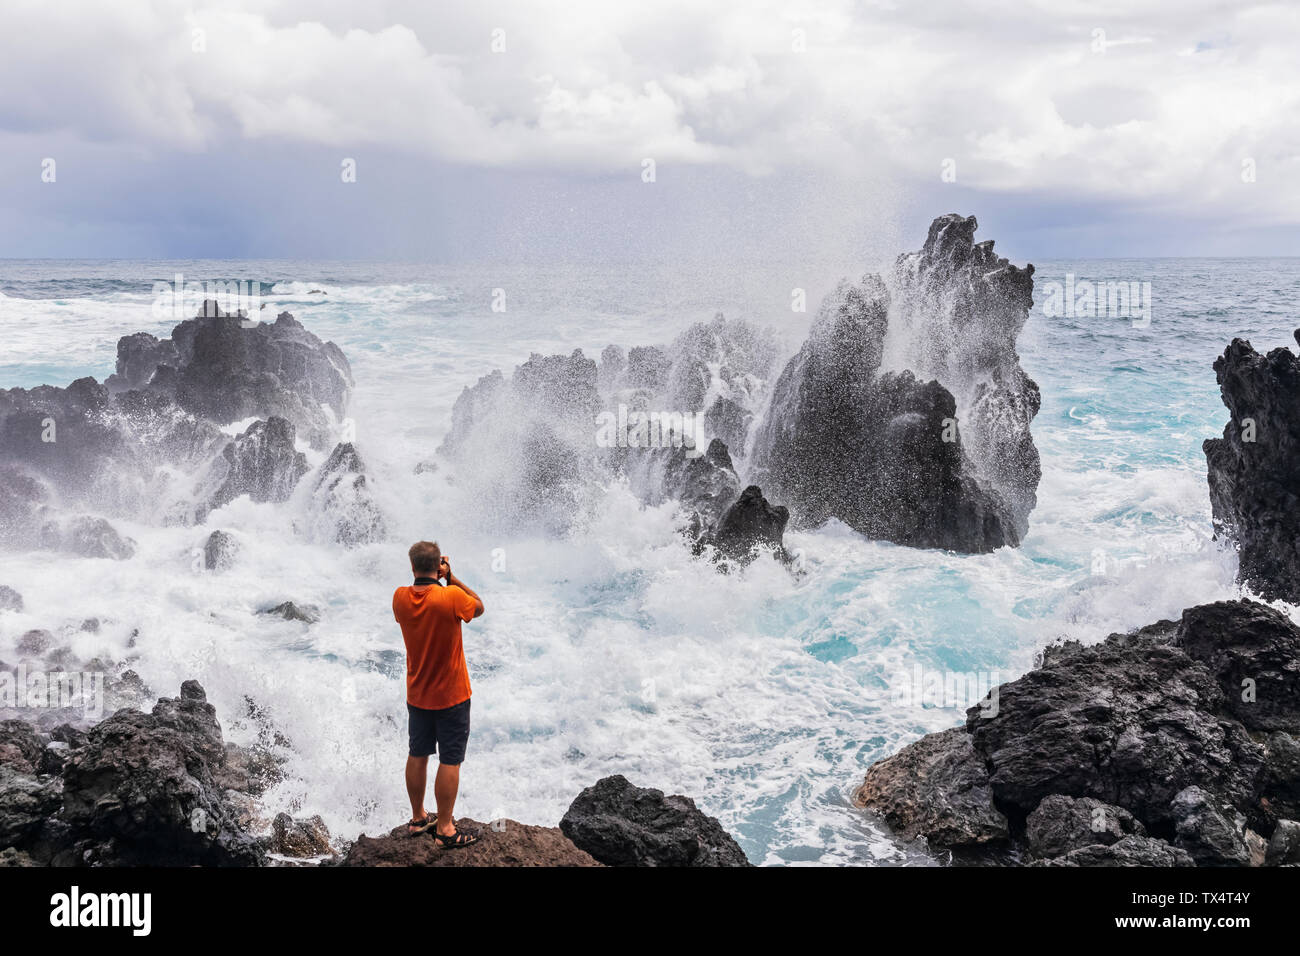 Stati Uniti d'America, Hawaii, Big Island, Laupahoehoe Beach Park,l'uomo a scattare foto di surf di rottura in corrispondenza della costa rocciosa Foto Stock